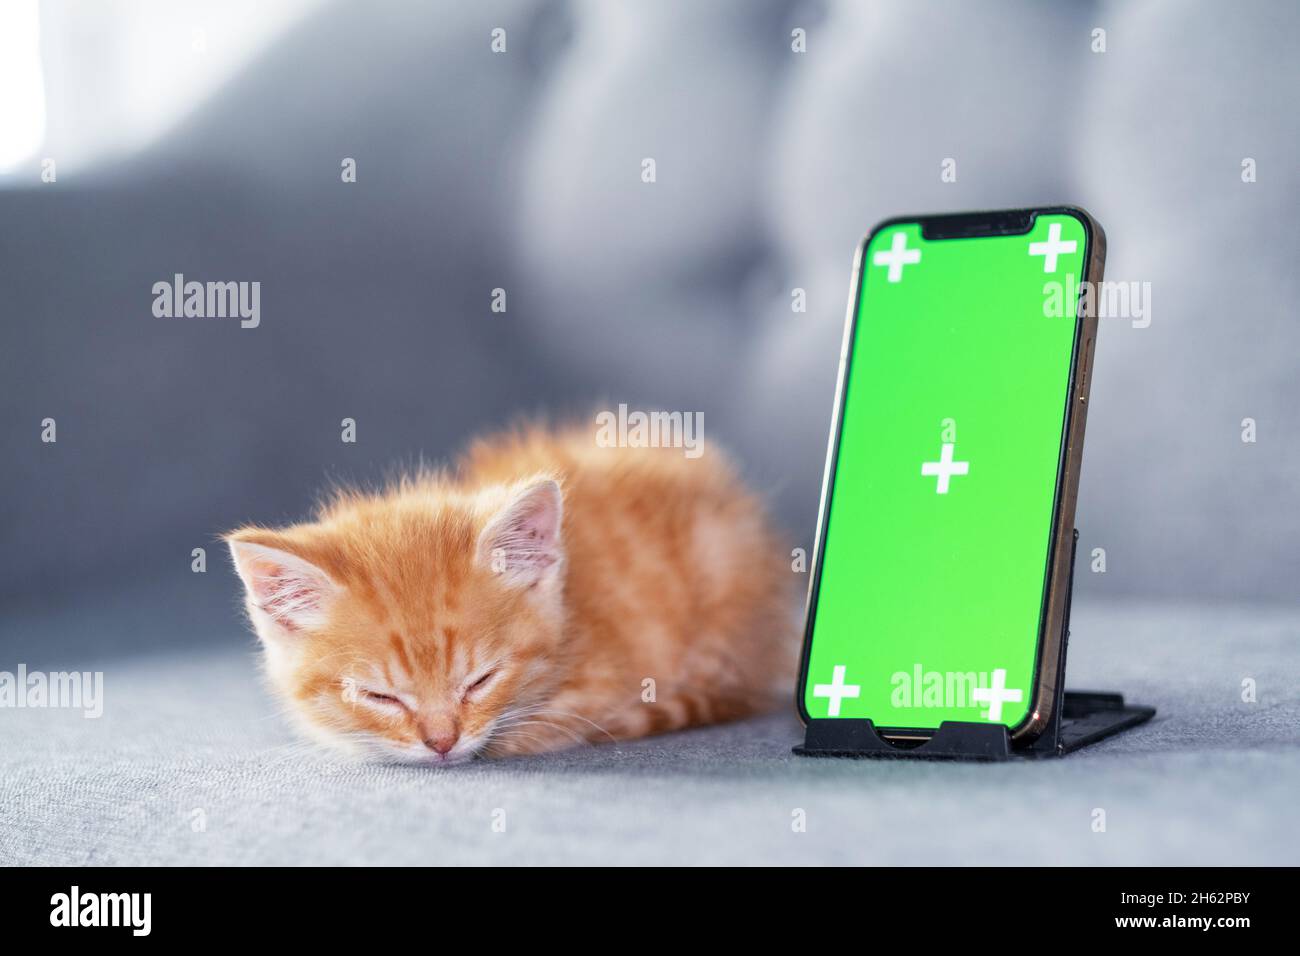 Kleines rotes Kätzchen liegt mit grünem Bildschirm iPhone 12. Werbung von Waren für Katzen und Kätzchen. Chroma-Taste. 04oct2021 Moskau Russland Stockfoto